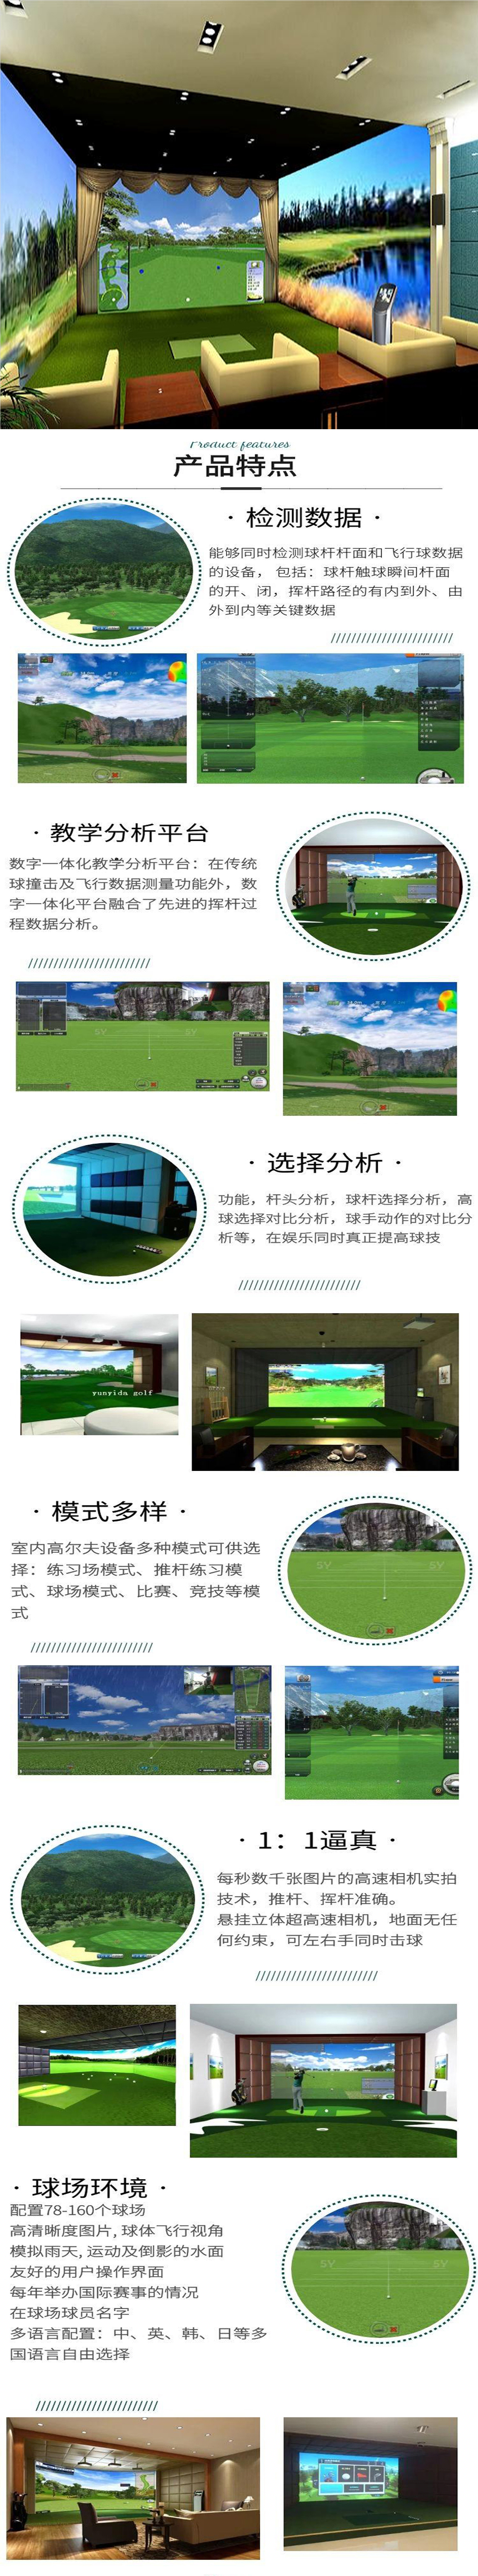 模拟室内高尔夫球场 2.jpg